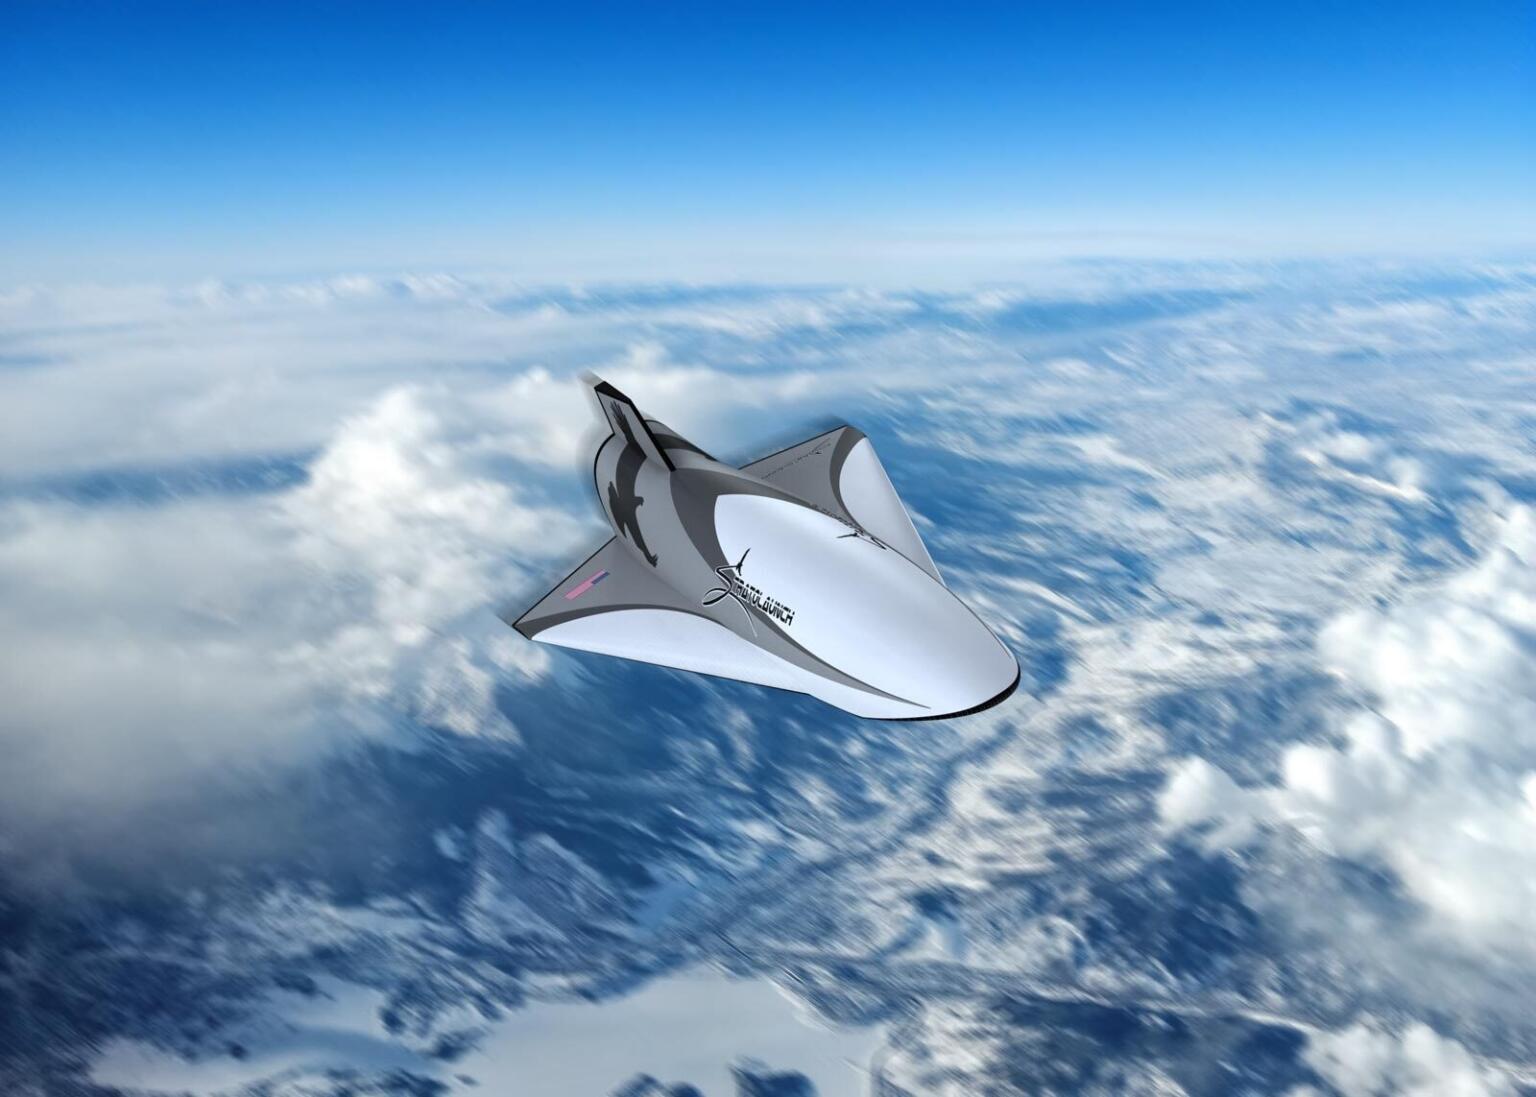 Talon-A, Talon-Z et Black Ice : découvrez les avions hypersoniques futuristes de Stratolaunch